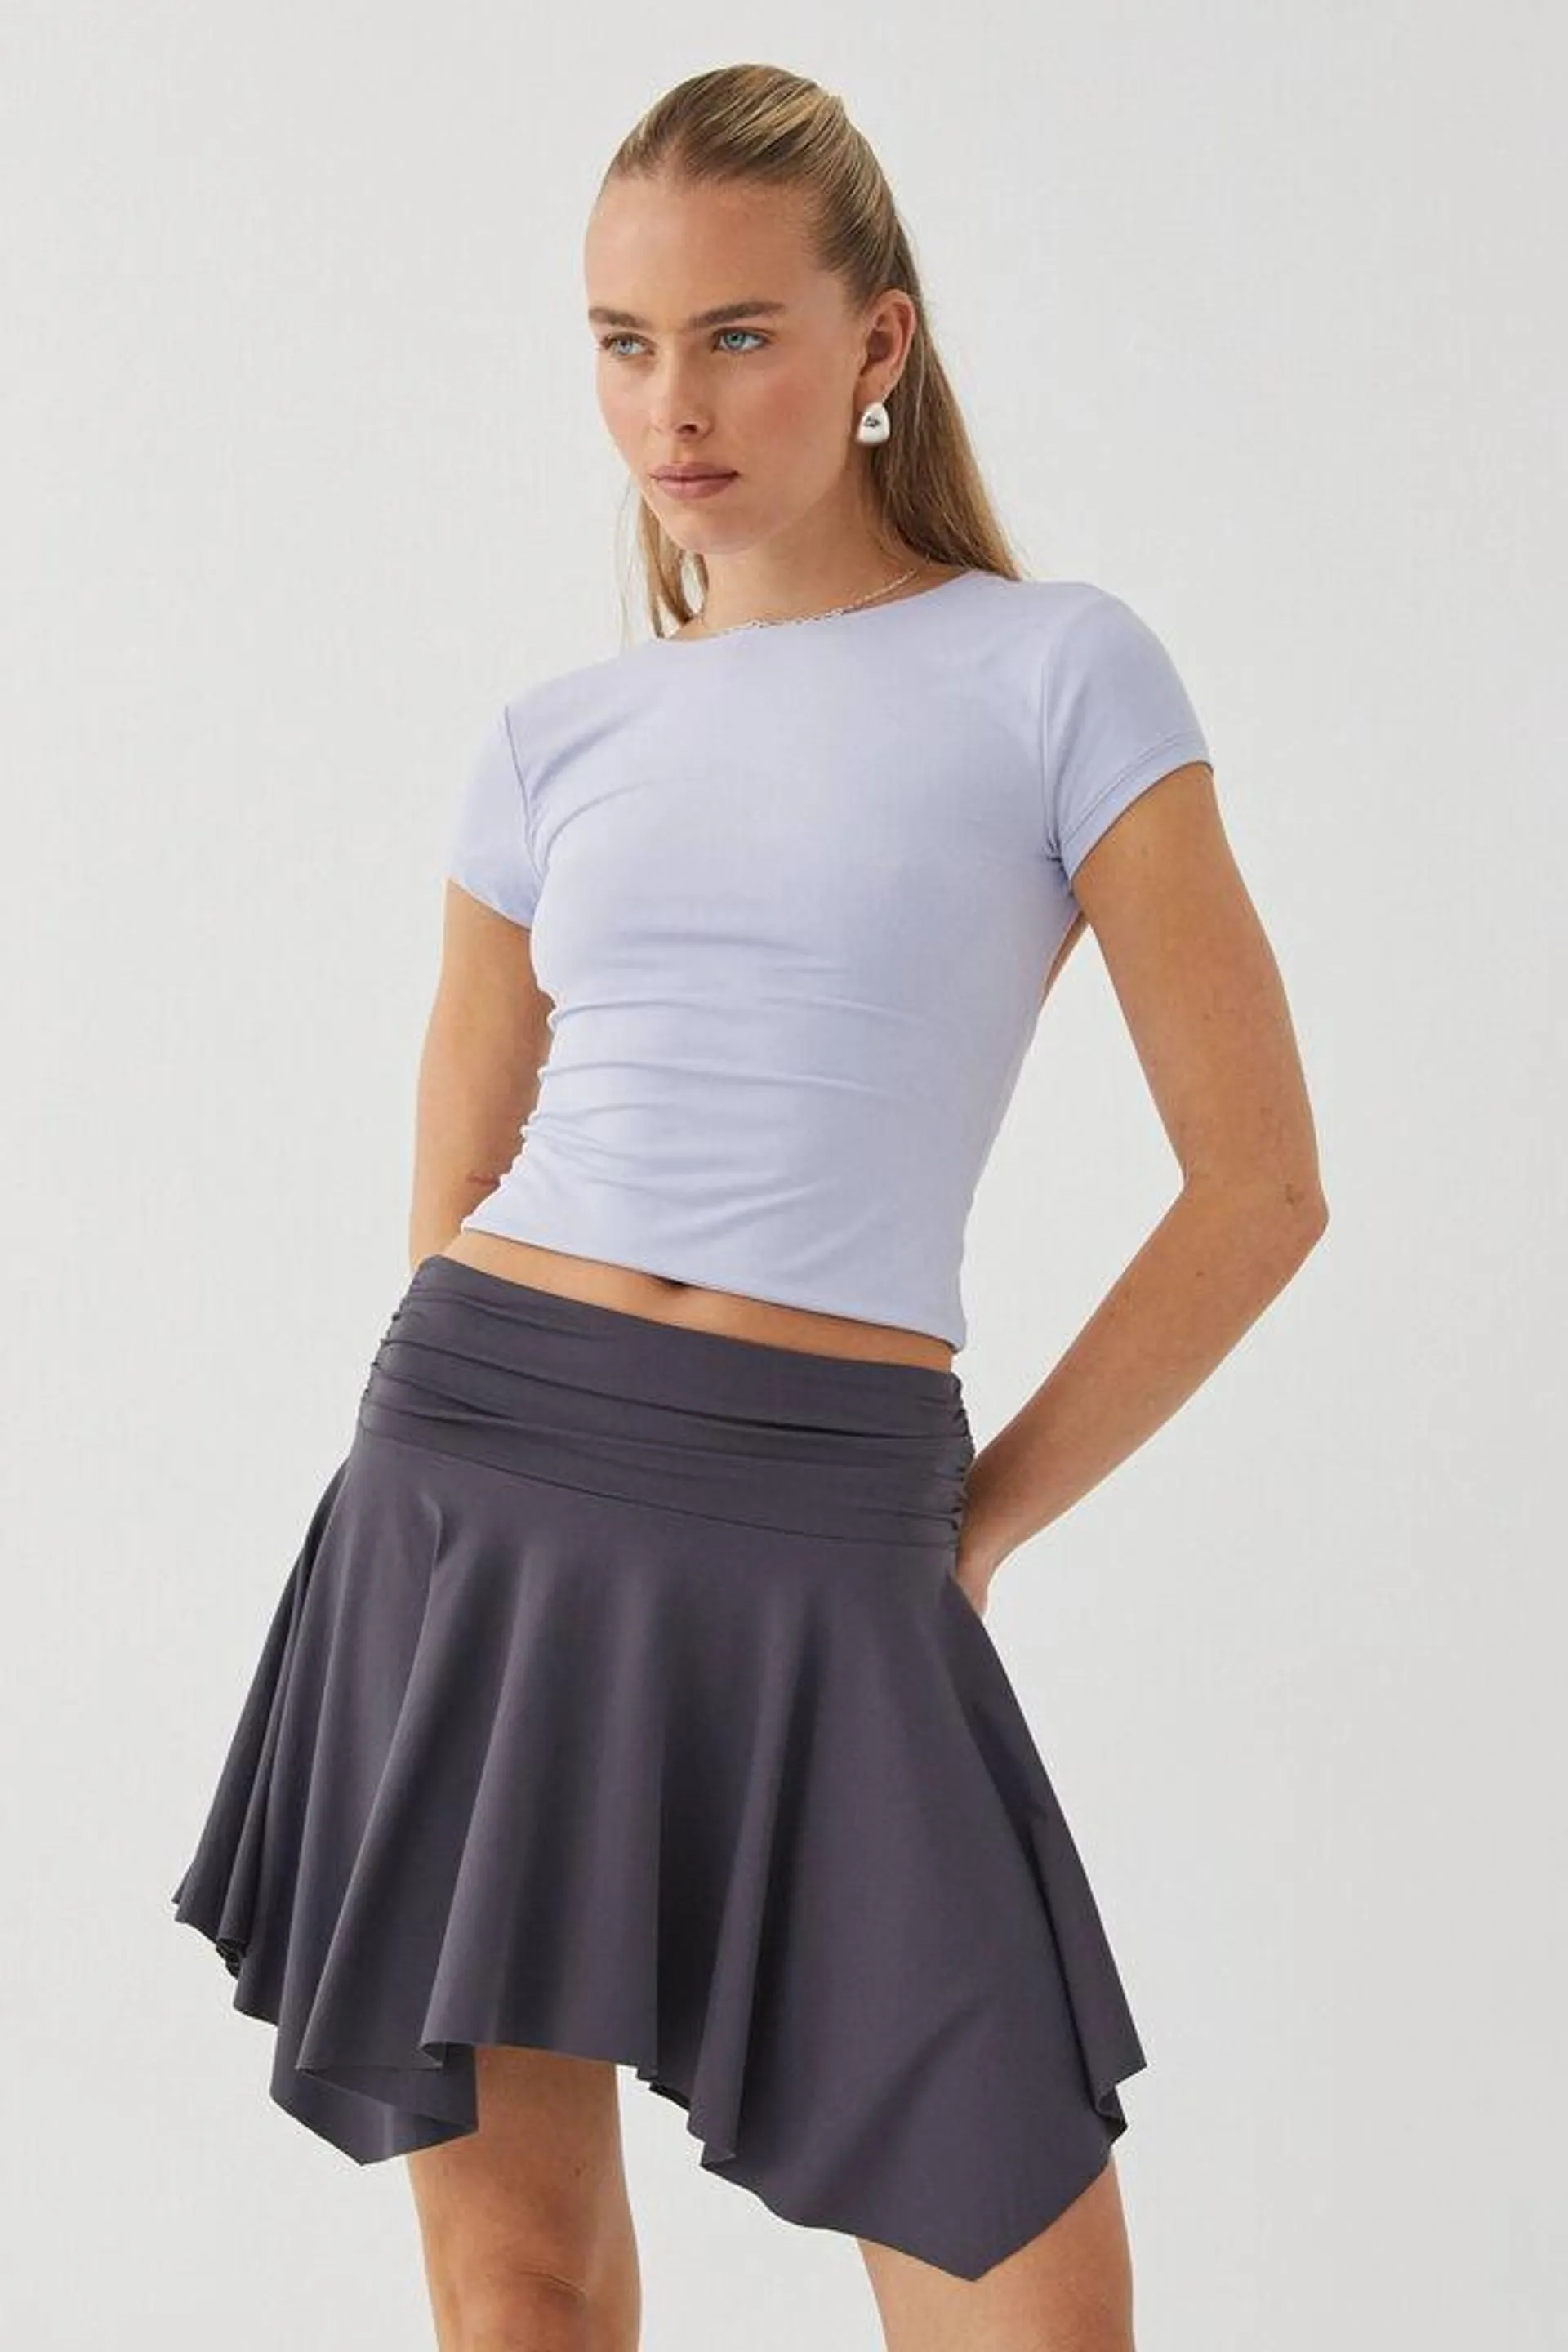 Luxe Hanky Hem Mini Skirt